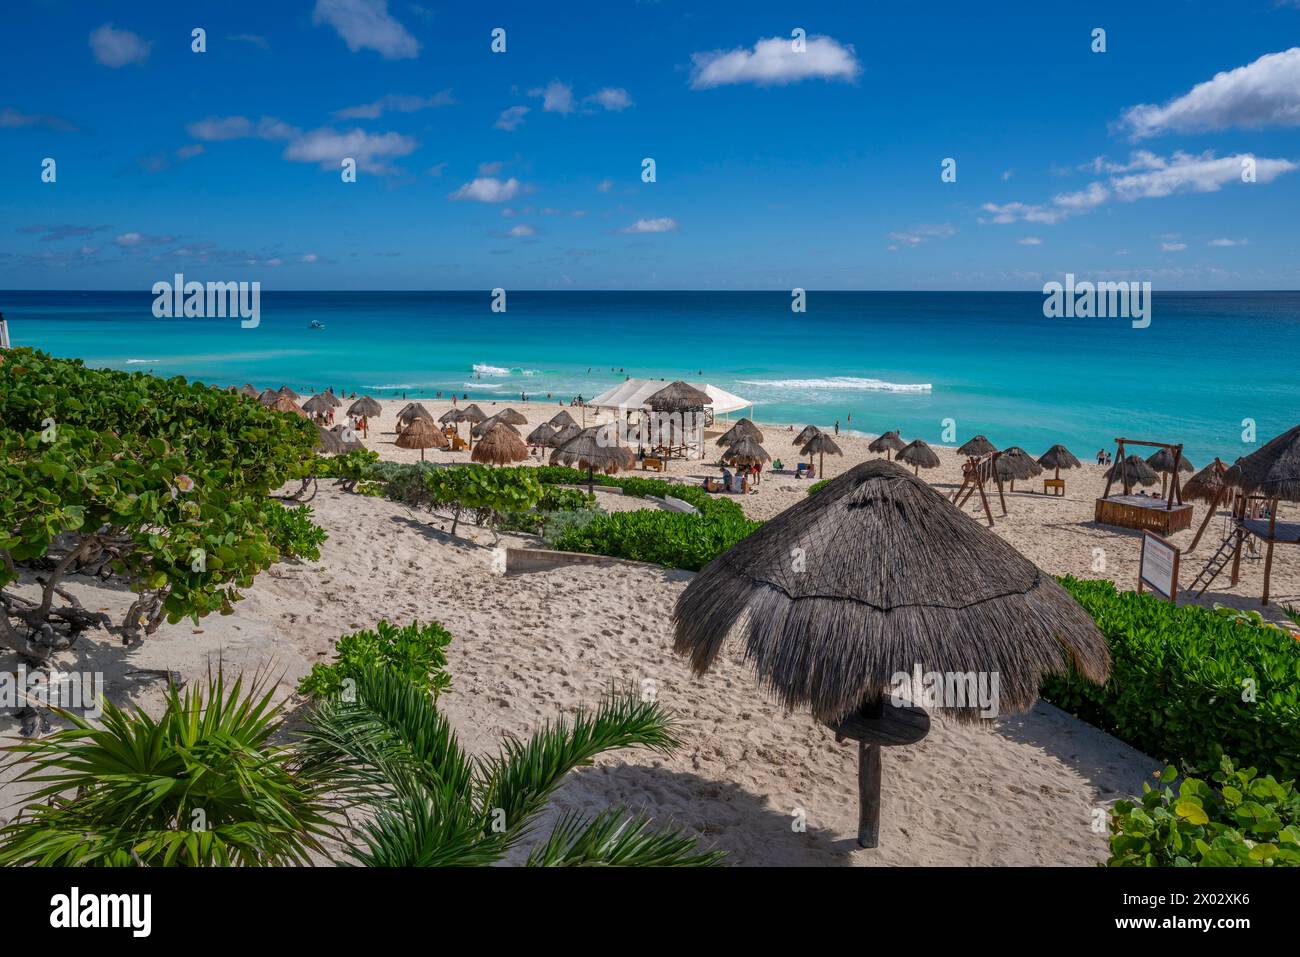 Blick auf den langen weißen Sandstrand von Playa Delfines, Hotelzone, Cancun, Karibikküste, Yucatan Halbinsel, Mexiko, Nordamerika Stockfoto